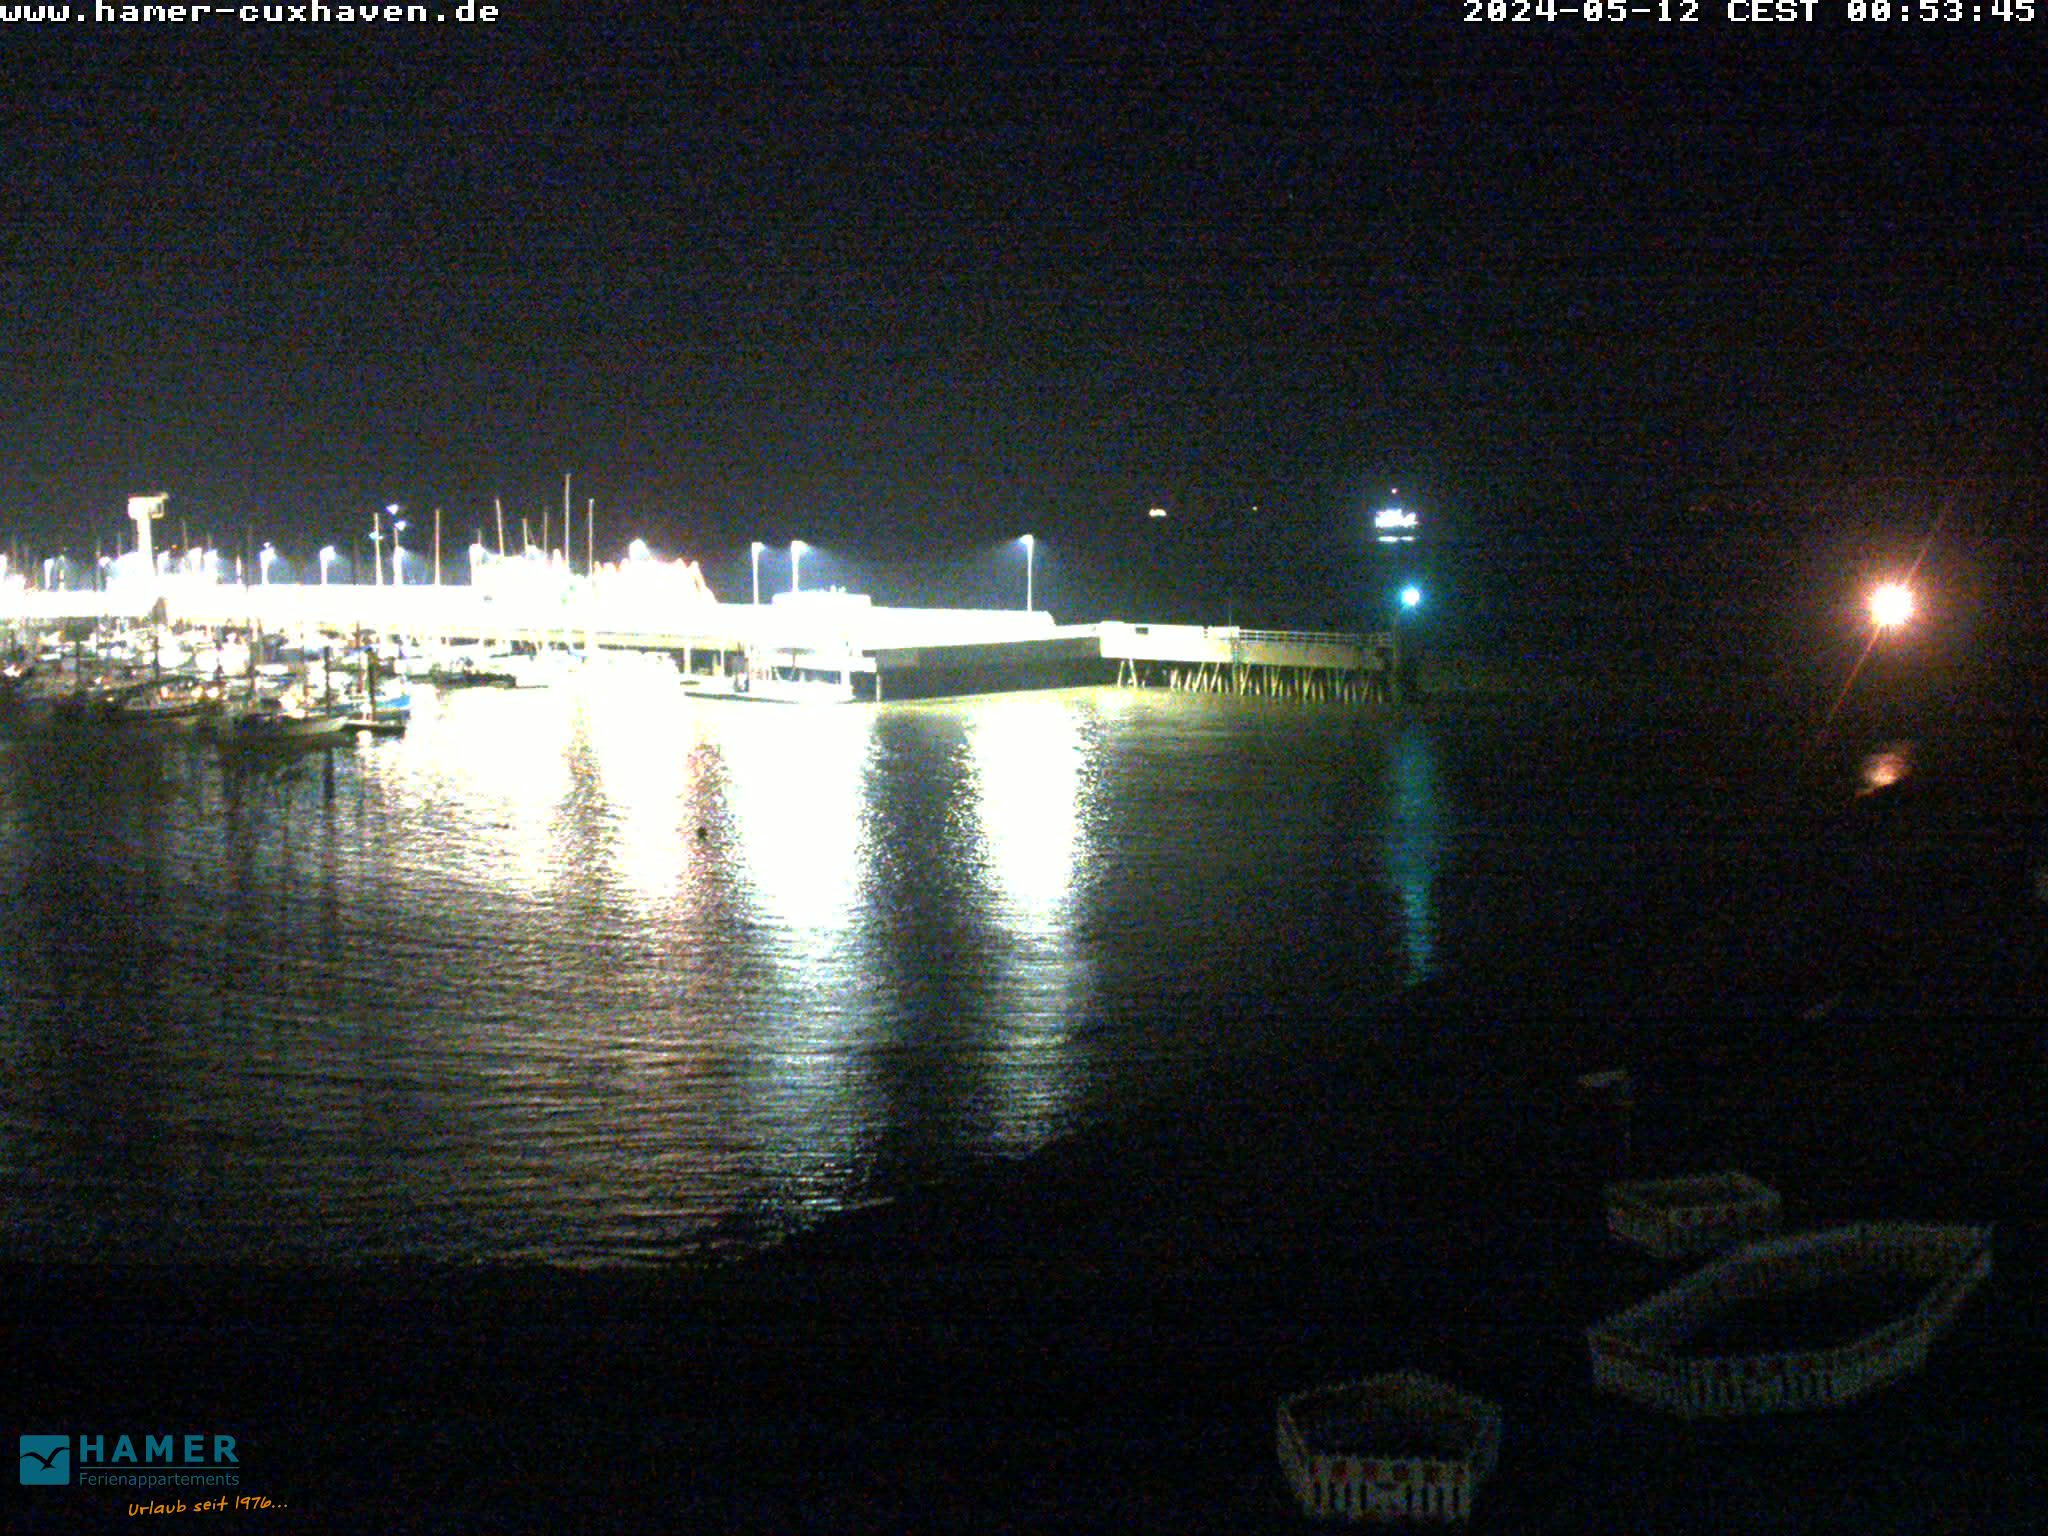 Cuxhaven Do. 00:55